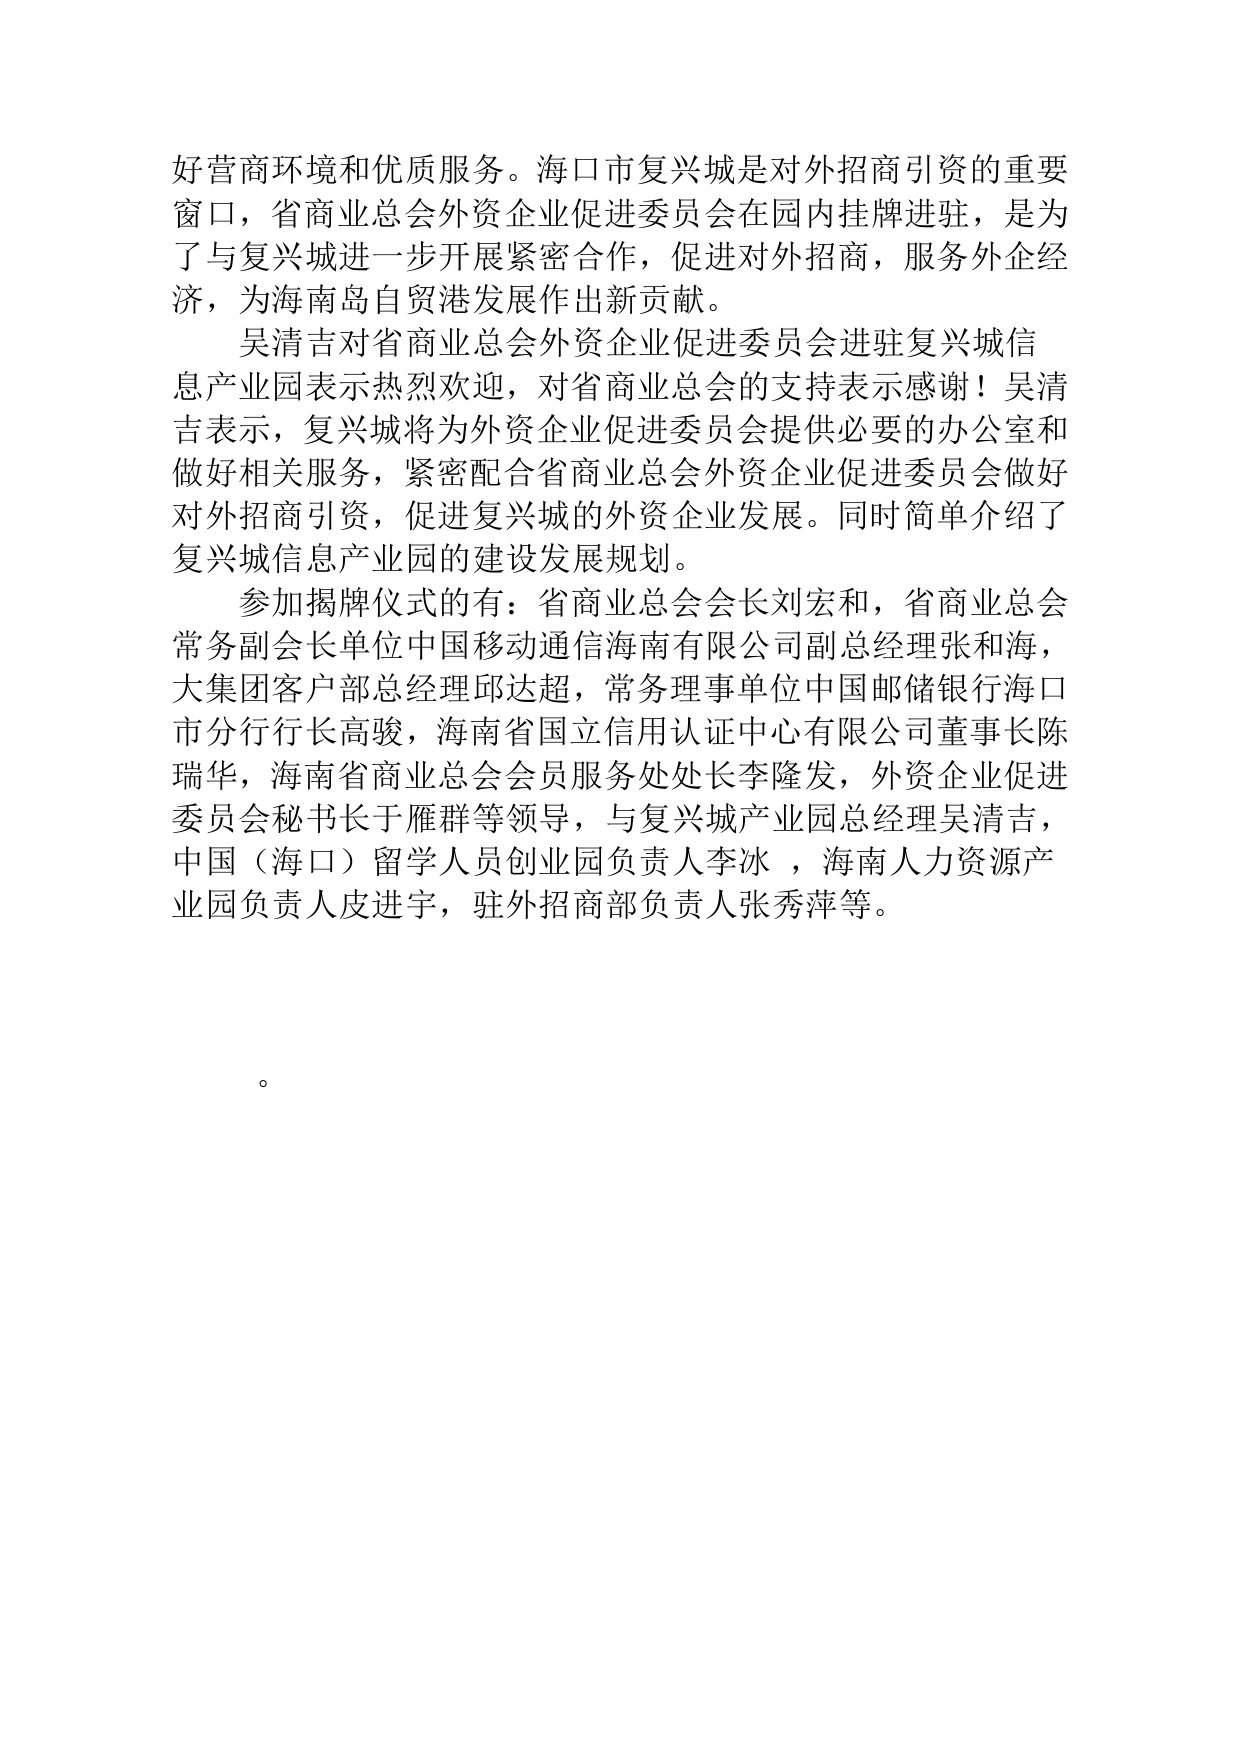 海南省商业总会外资企业促进委员会在复兴城挂牌仪式(2)(1)(1)_page-0003.jpg